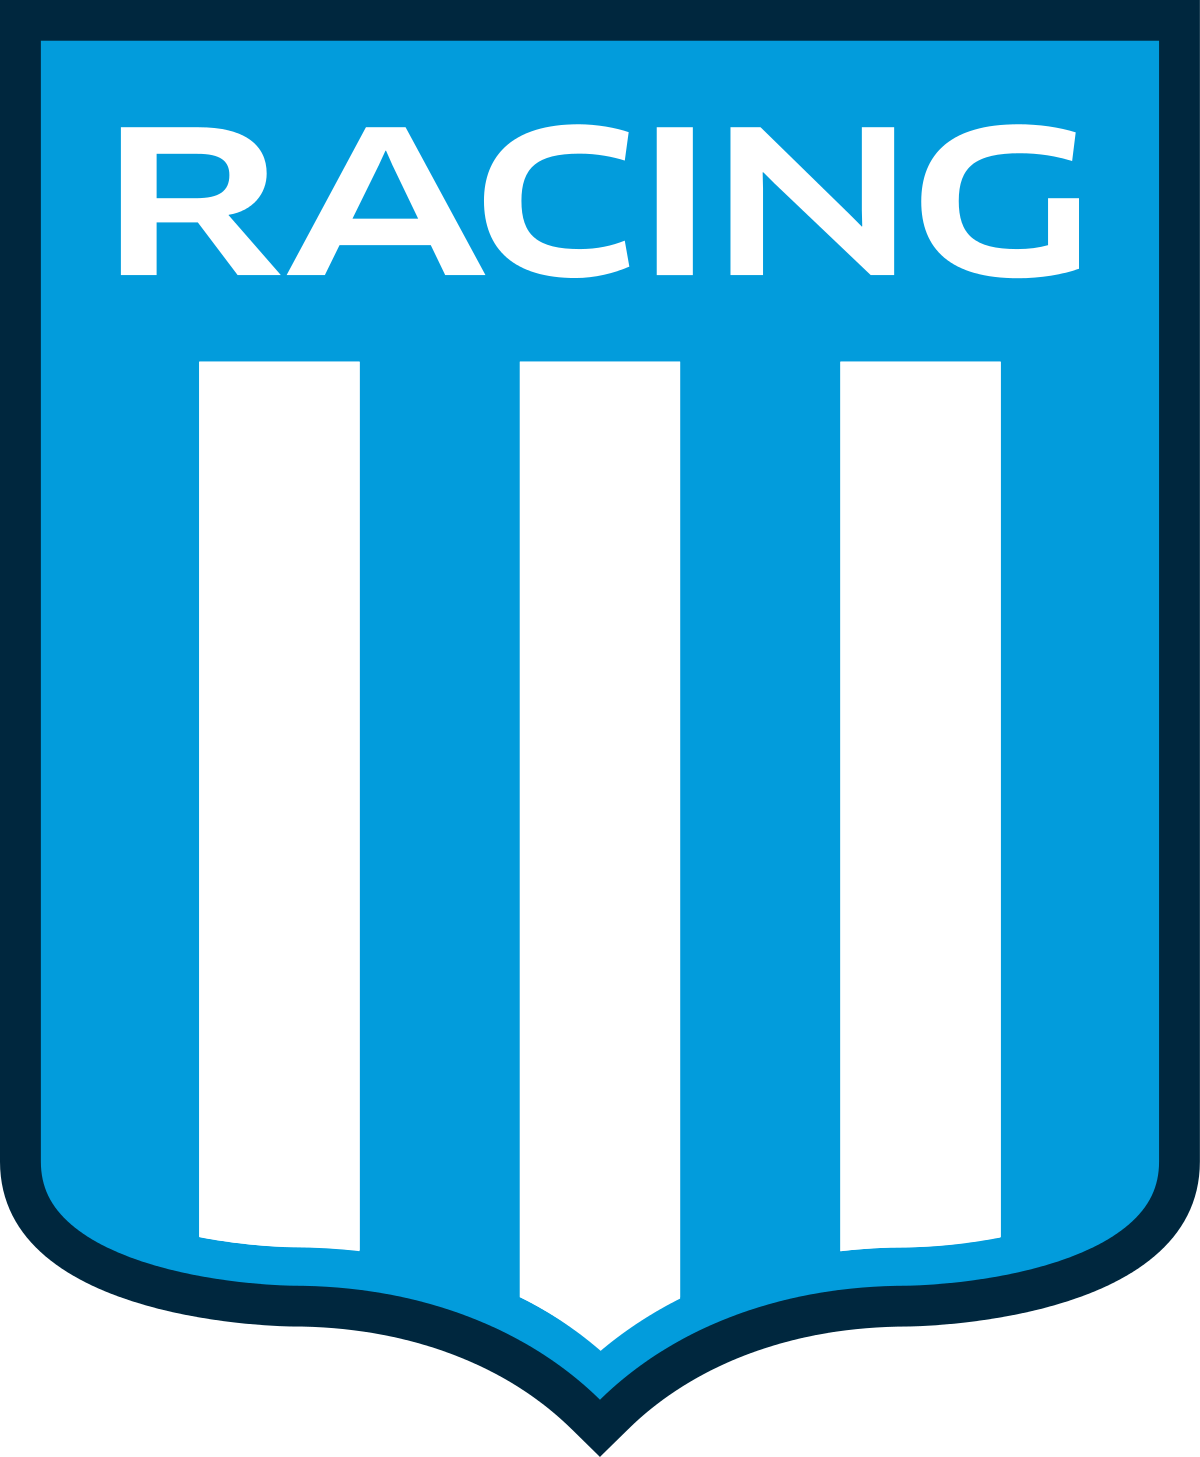 Racing Club De Avellaneda